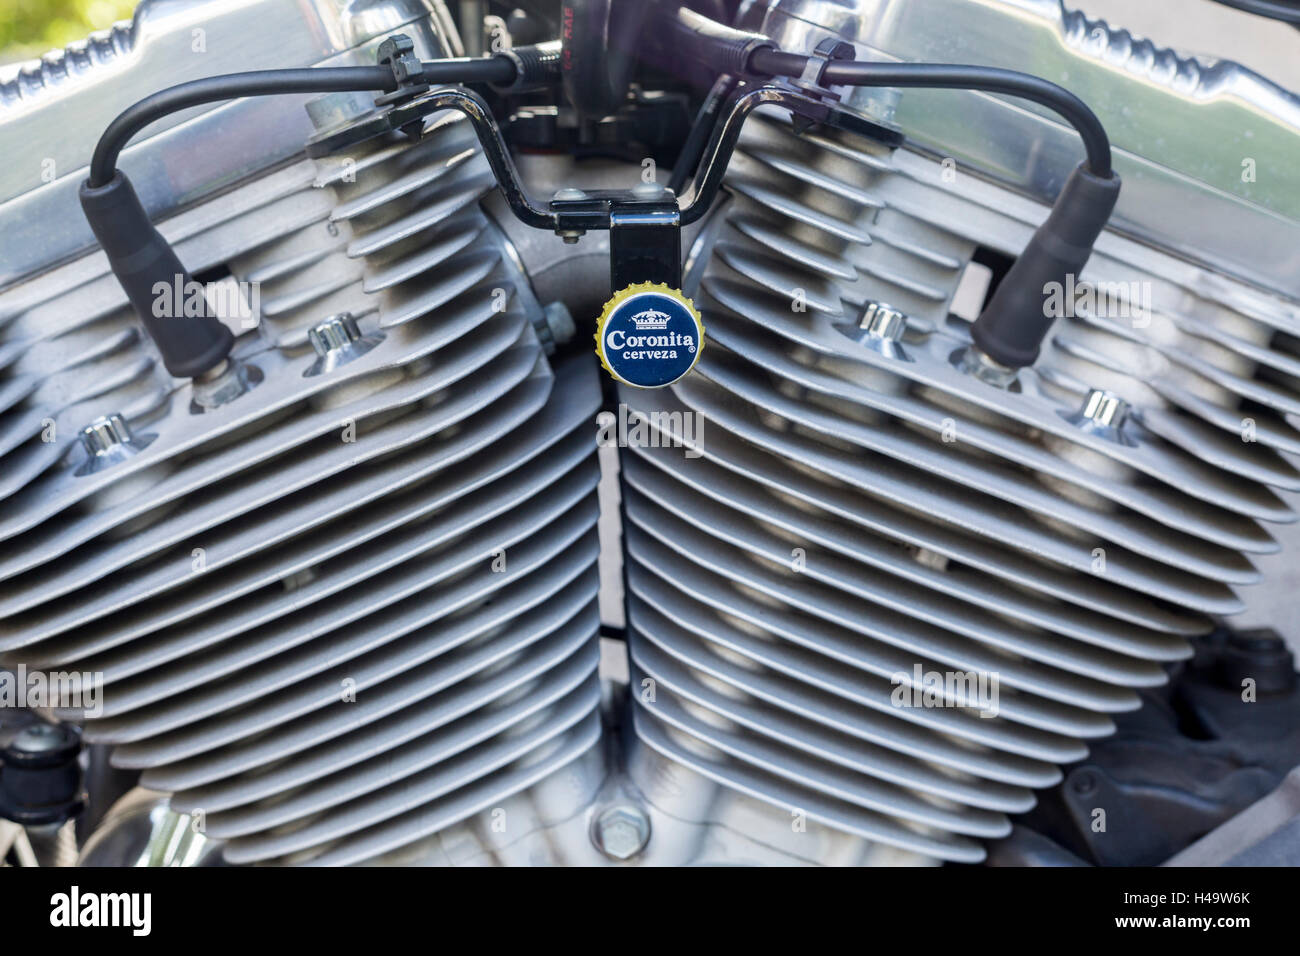 Harley Davidson motore con bottiglia Coronitas decorazione superiore sulla staffa Foto Stock